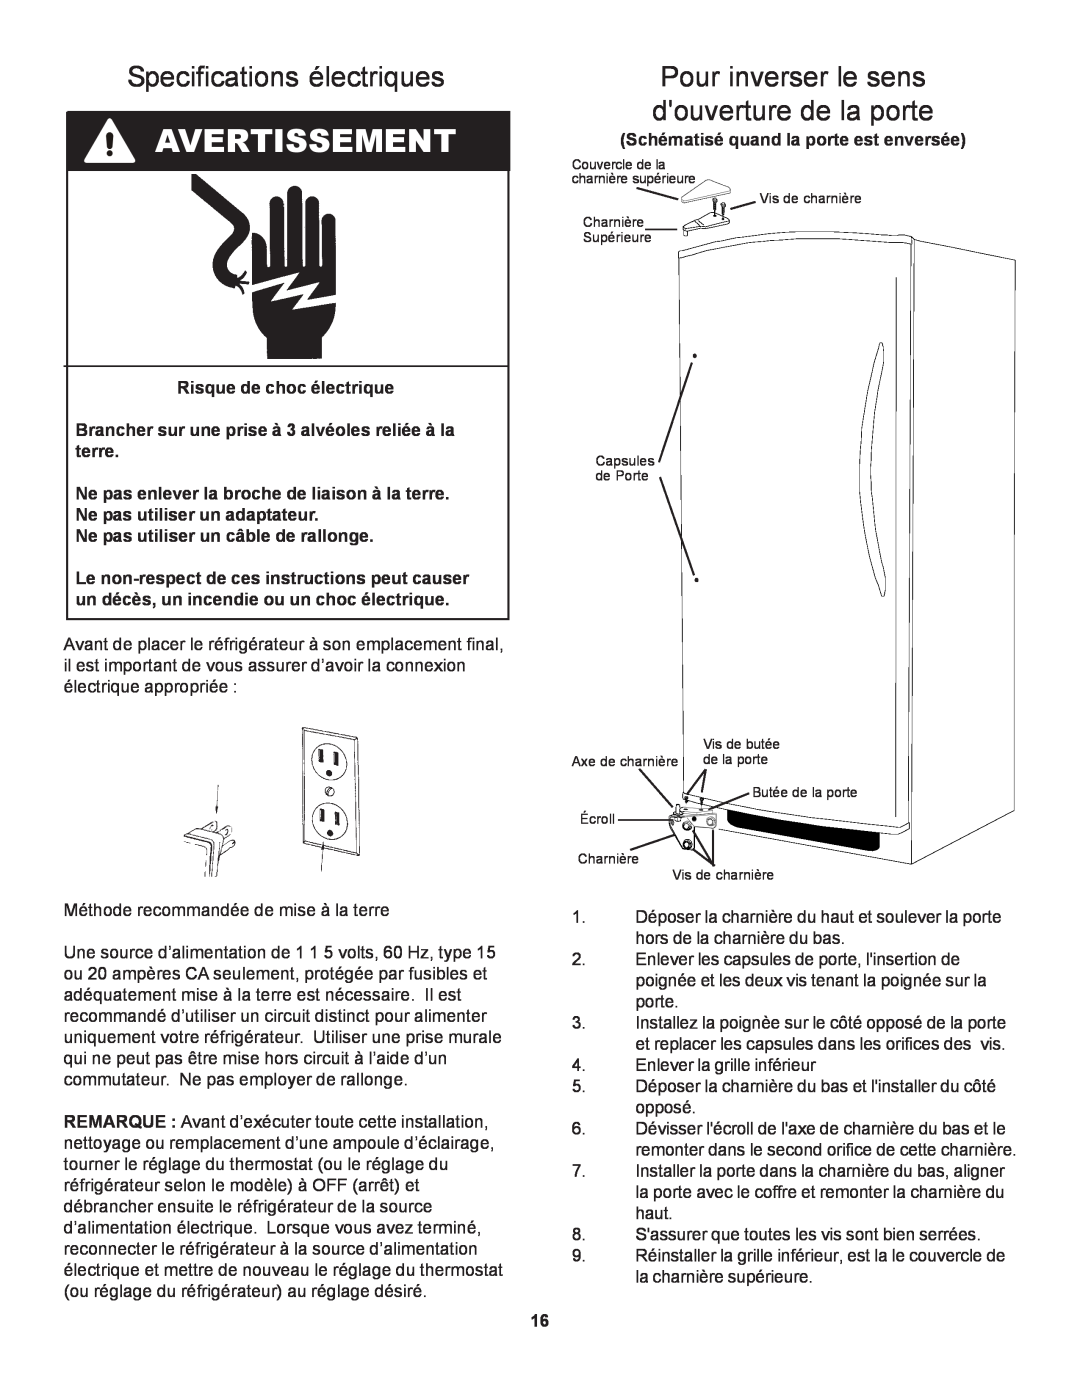 Danby D1866WE manual Specifications électriques, Pour inverser le sens douverture de la porte, Avertissement 